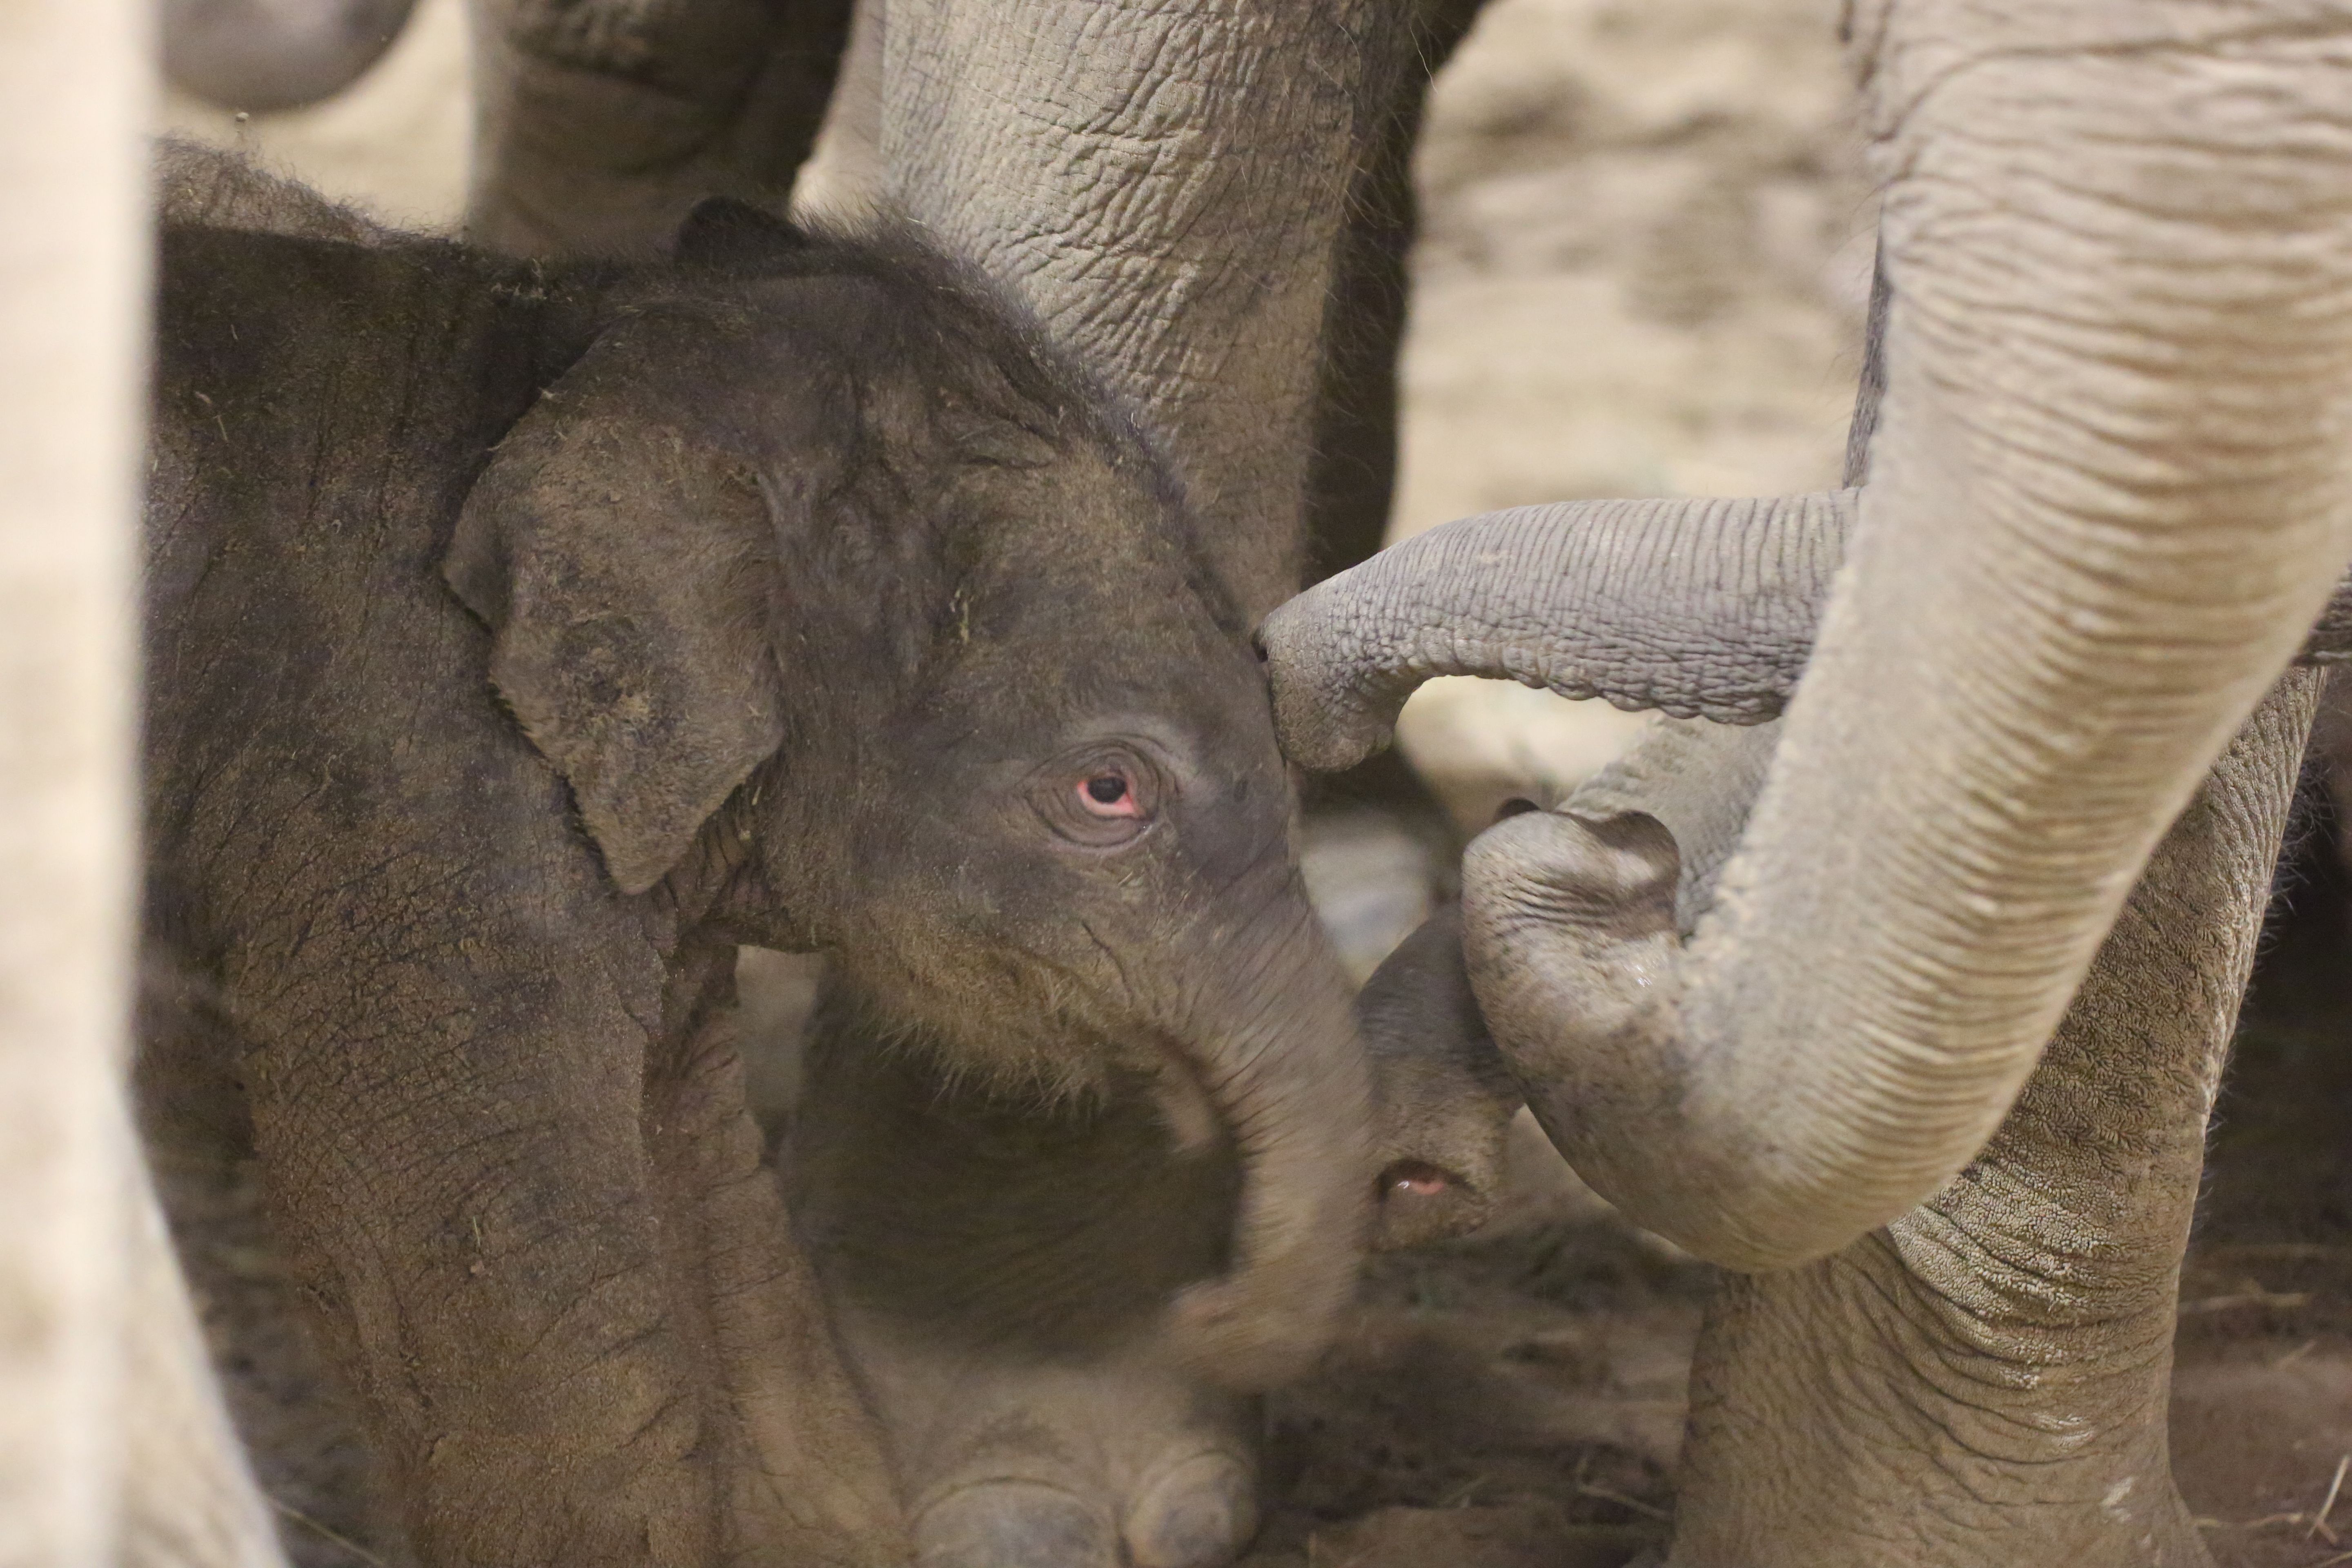 A baby elephant born at Pairi Daiza